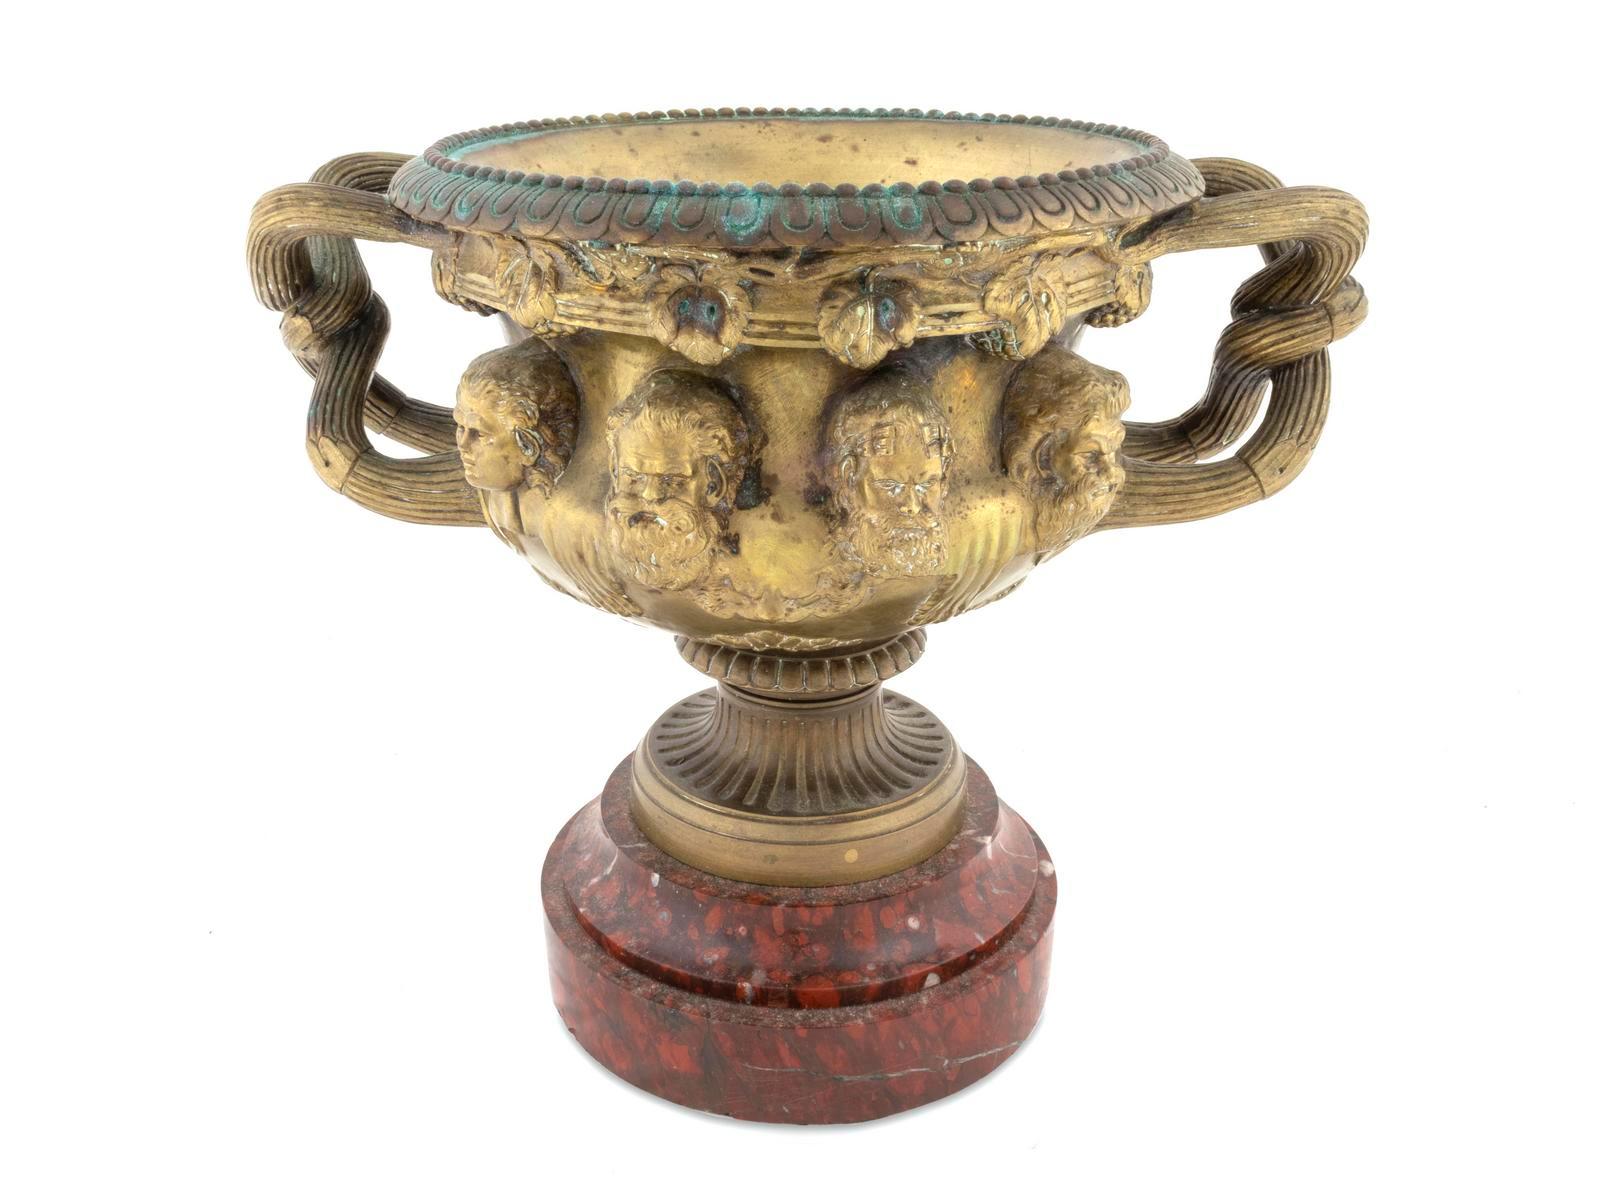 Französische Warwick-Vase mit zwei Henkeln aus Goldbronze
Nach Clodion. Mit Ei-und-Pfeil-Rand, das Gefäß in Relief mit Puttenköpfen und verschlungenen Griffen in Form von Zweigen, auf einem runden Sockel aus Marmor Rouge Griotte, um 1880
Maße: